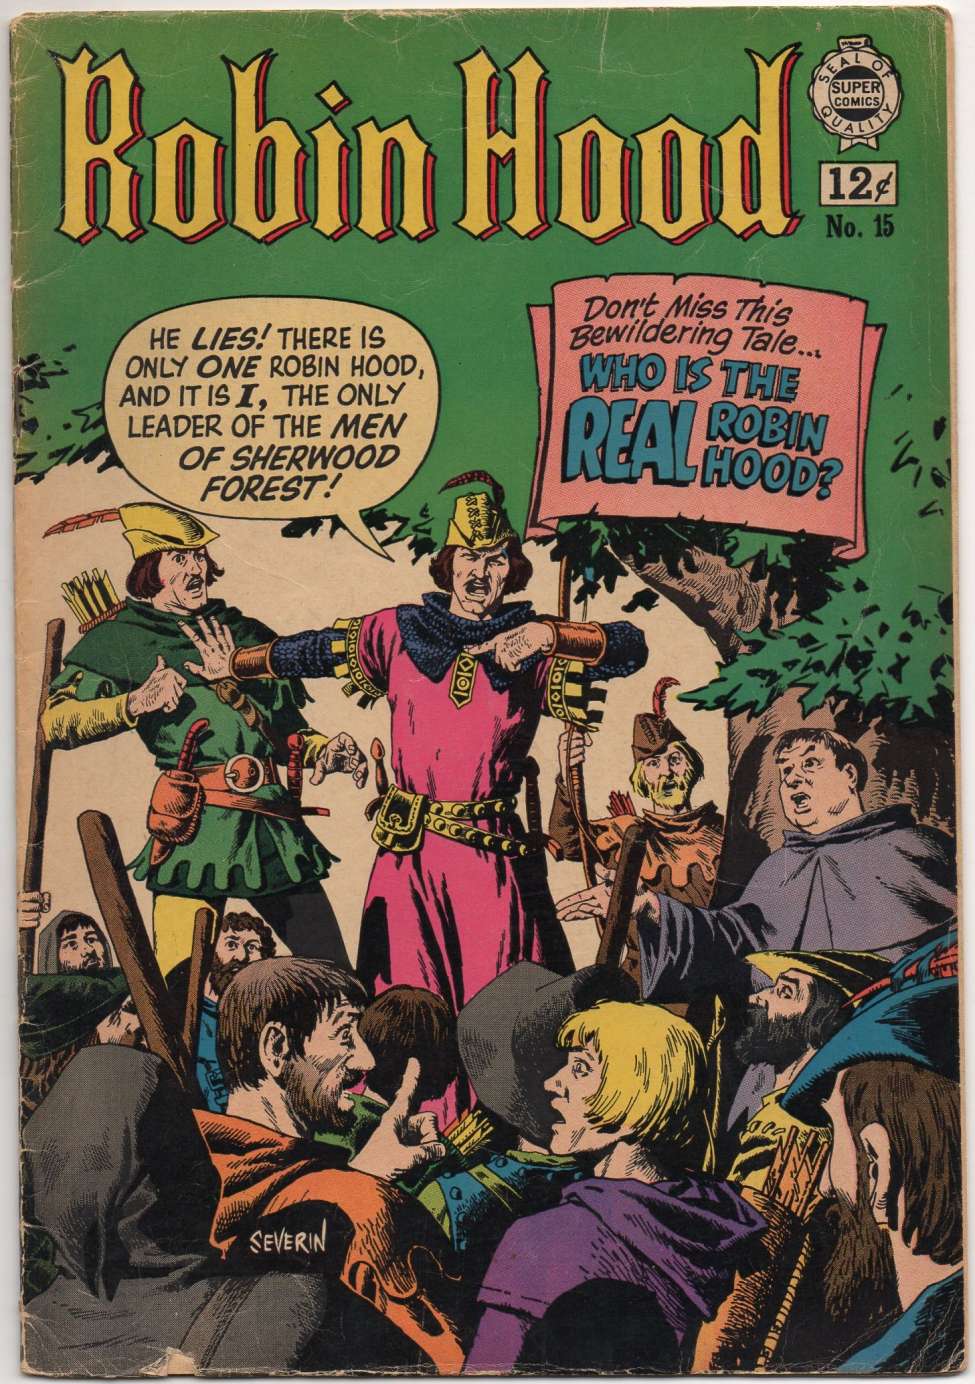 Robin Hood 15 (I. W. Publishing / Super 